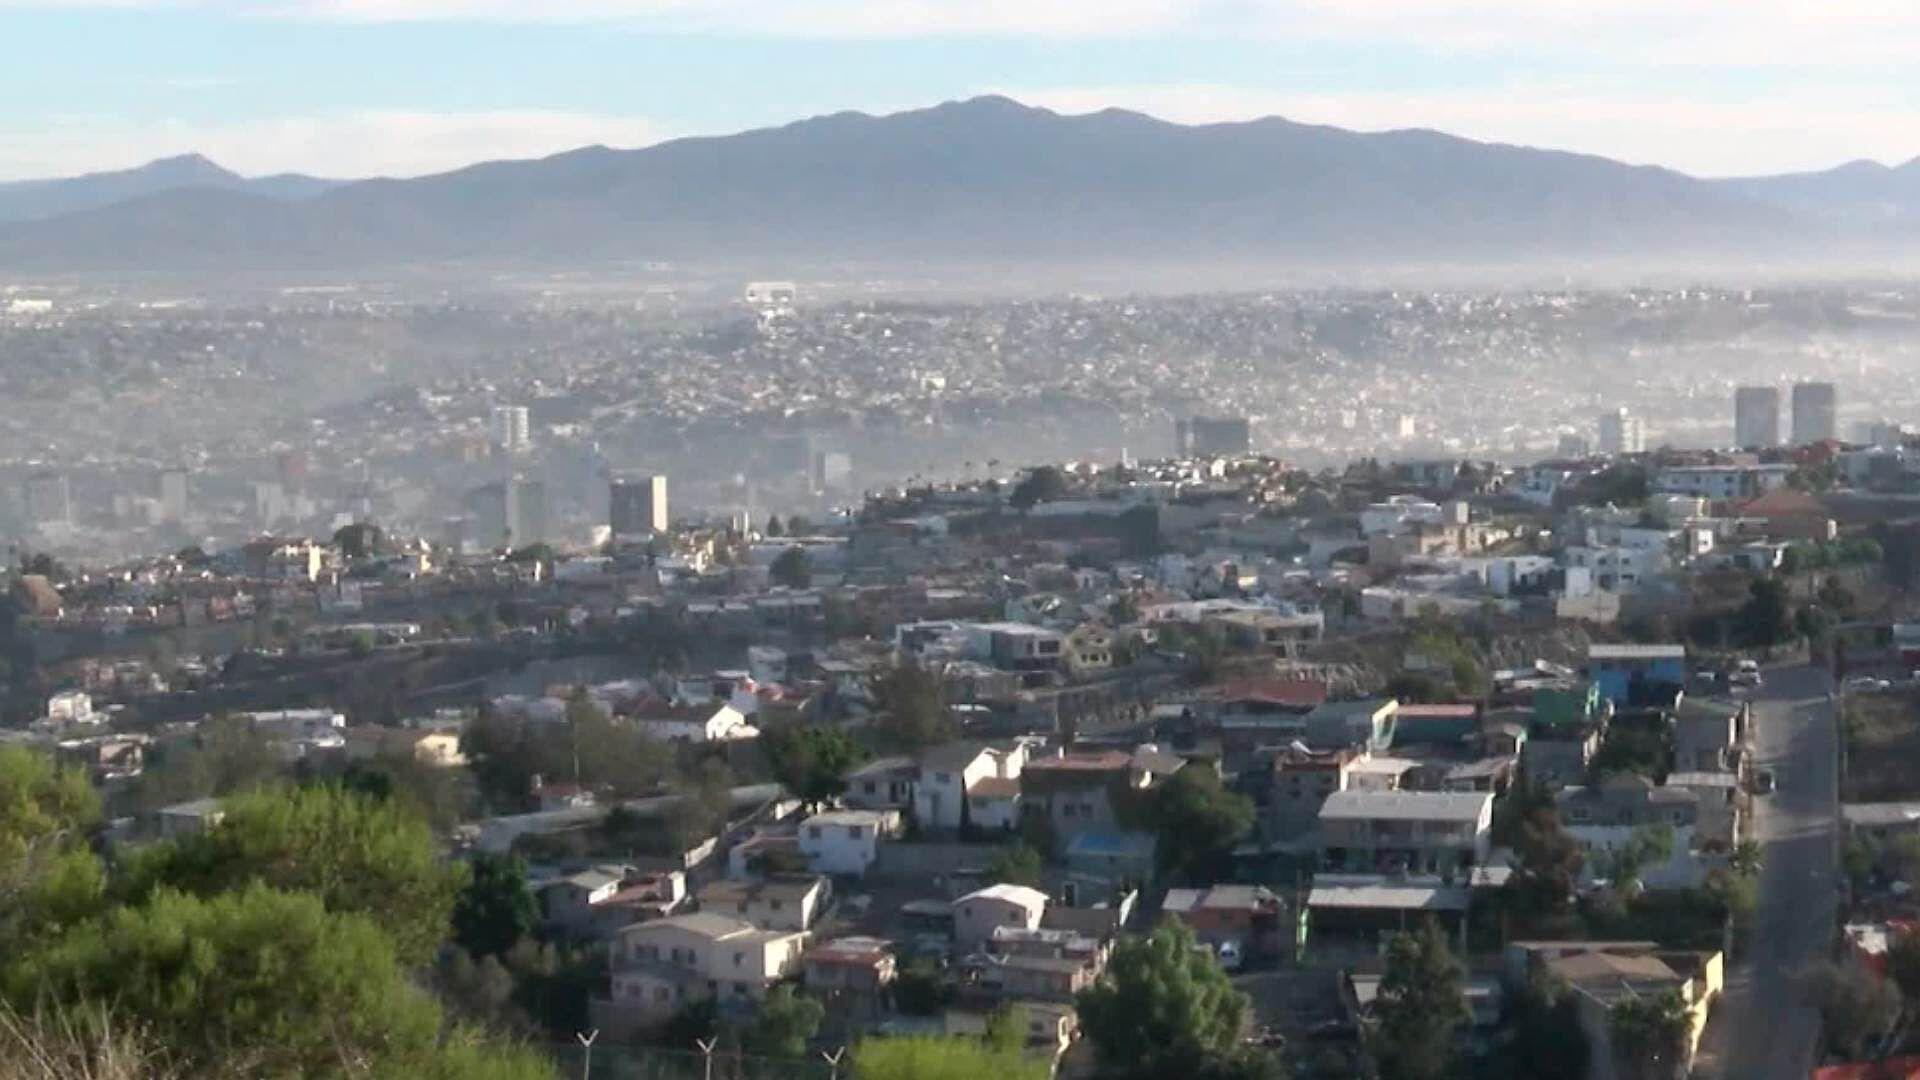 Aumento de Extranjeros en Tijuana Dispara Costo de Renta y Venta de Viviendas